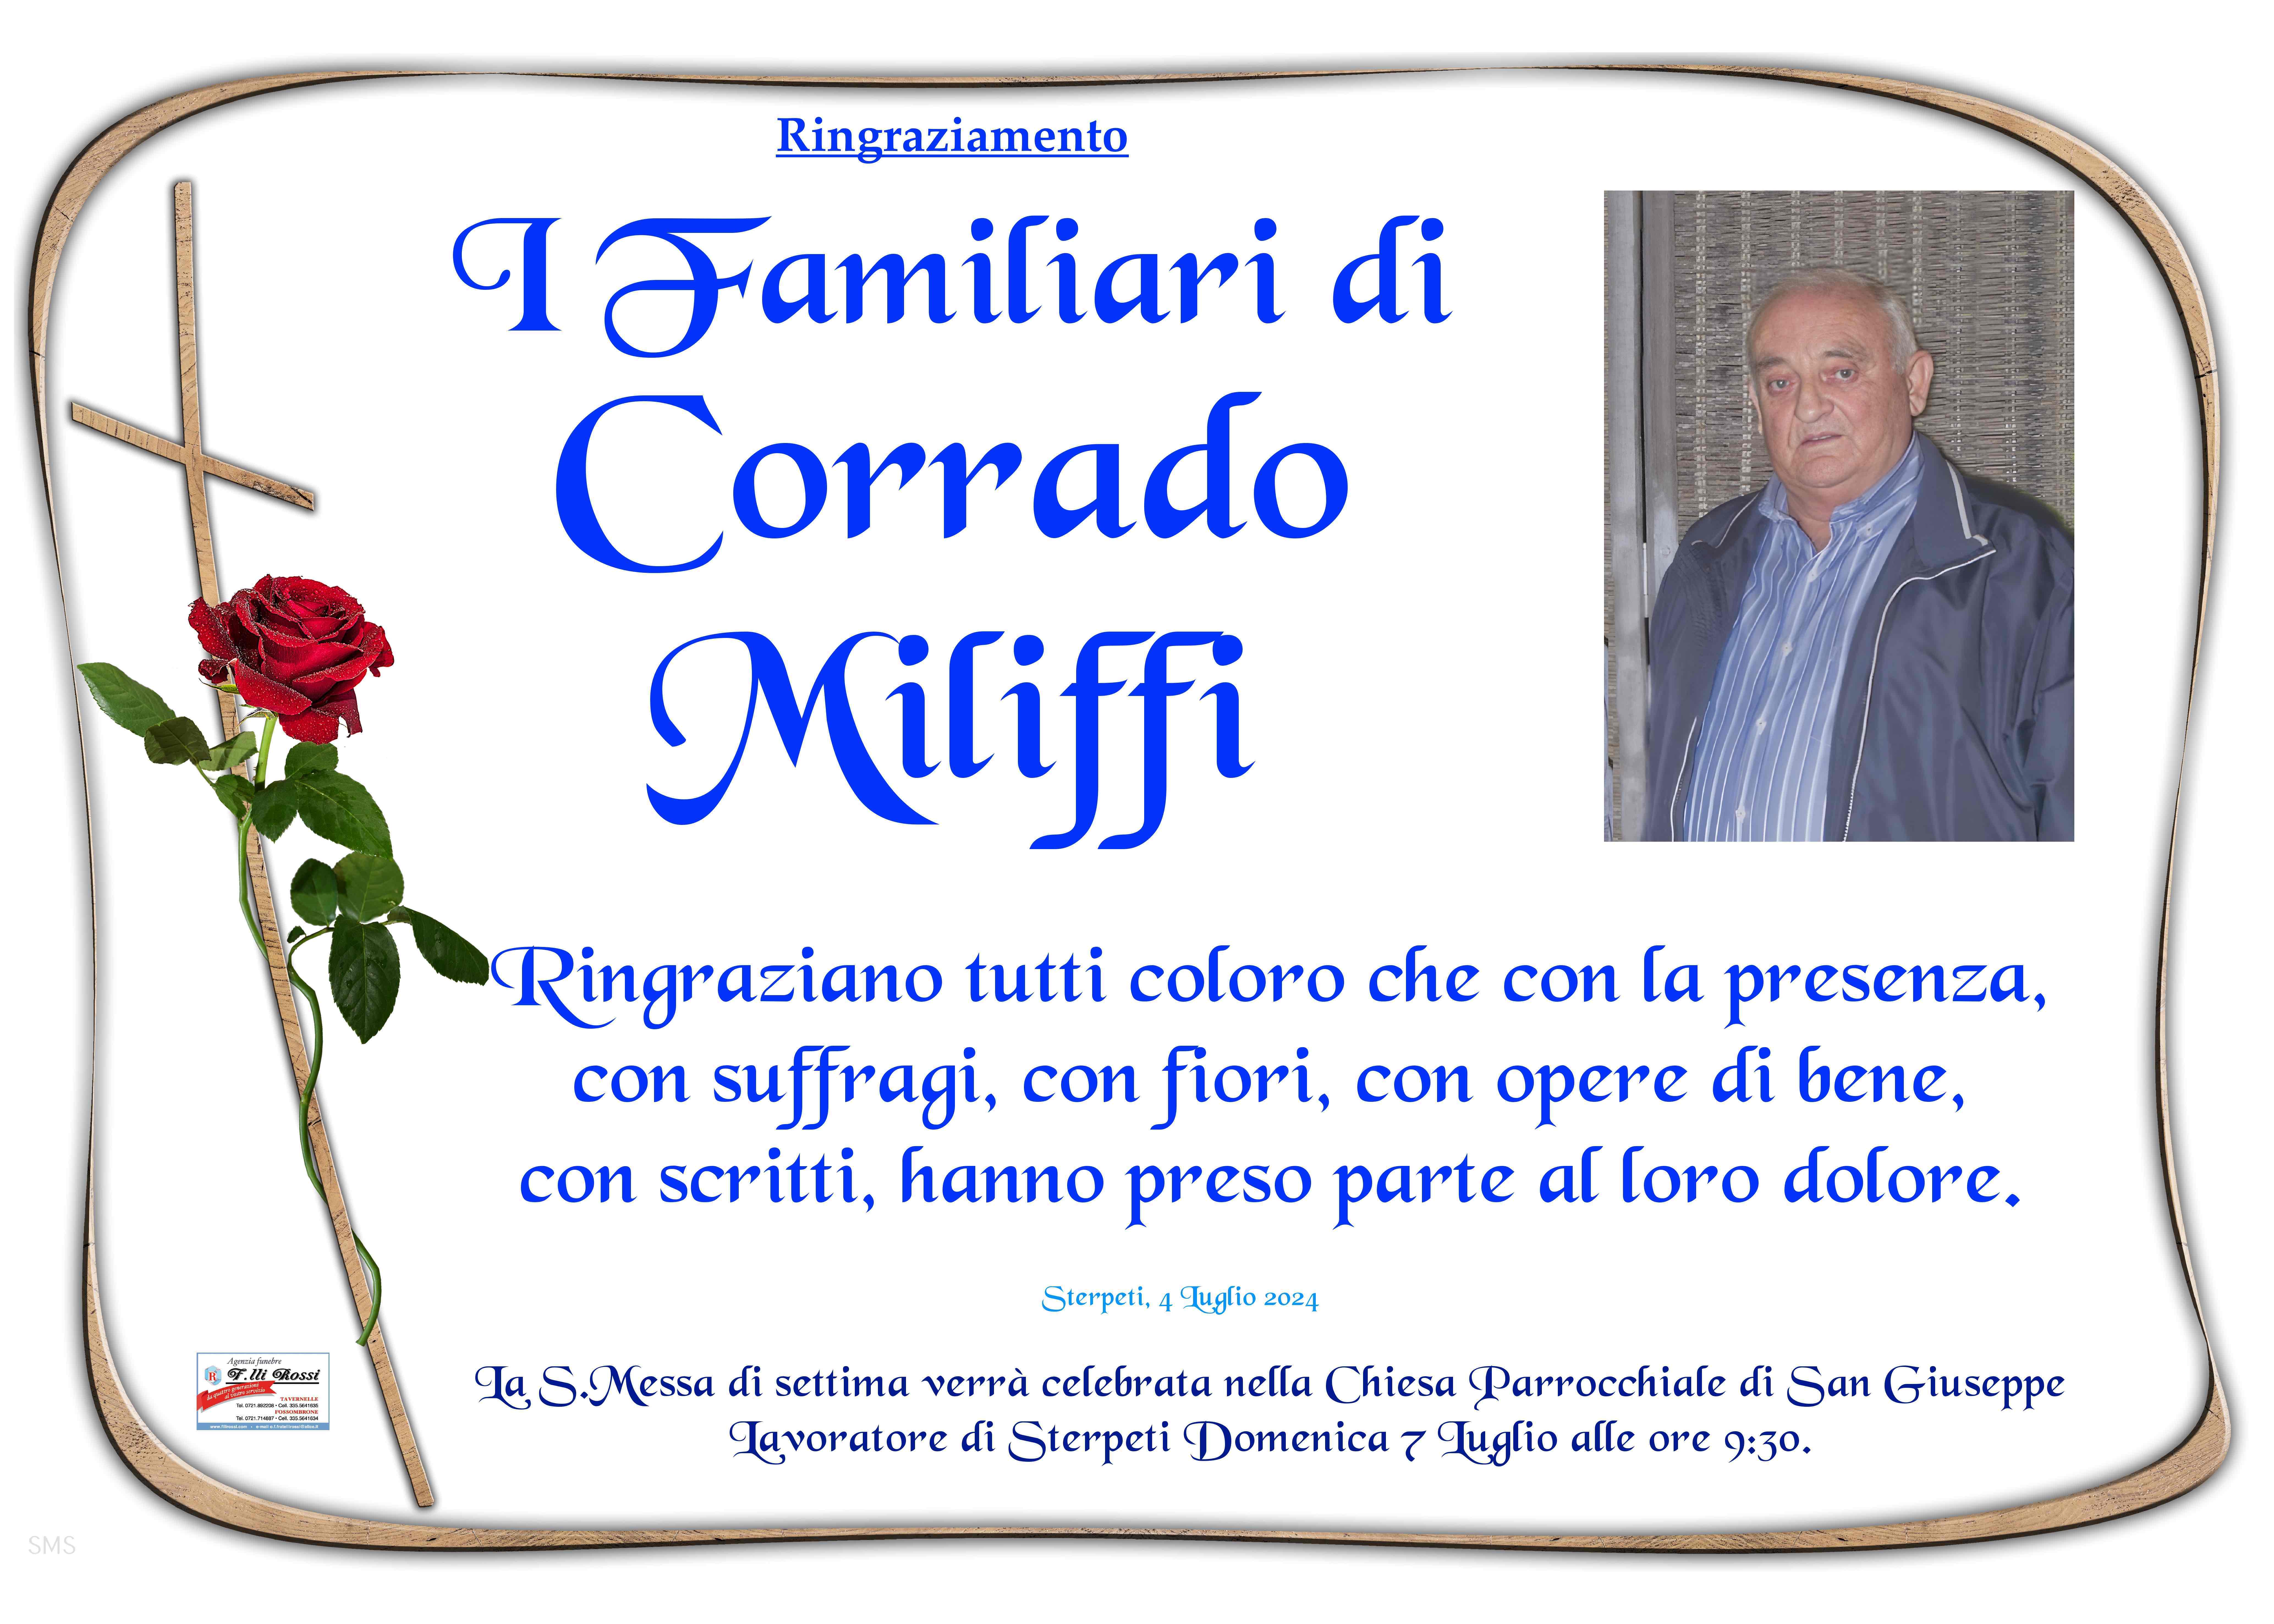 Corrado Miliffi